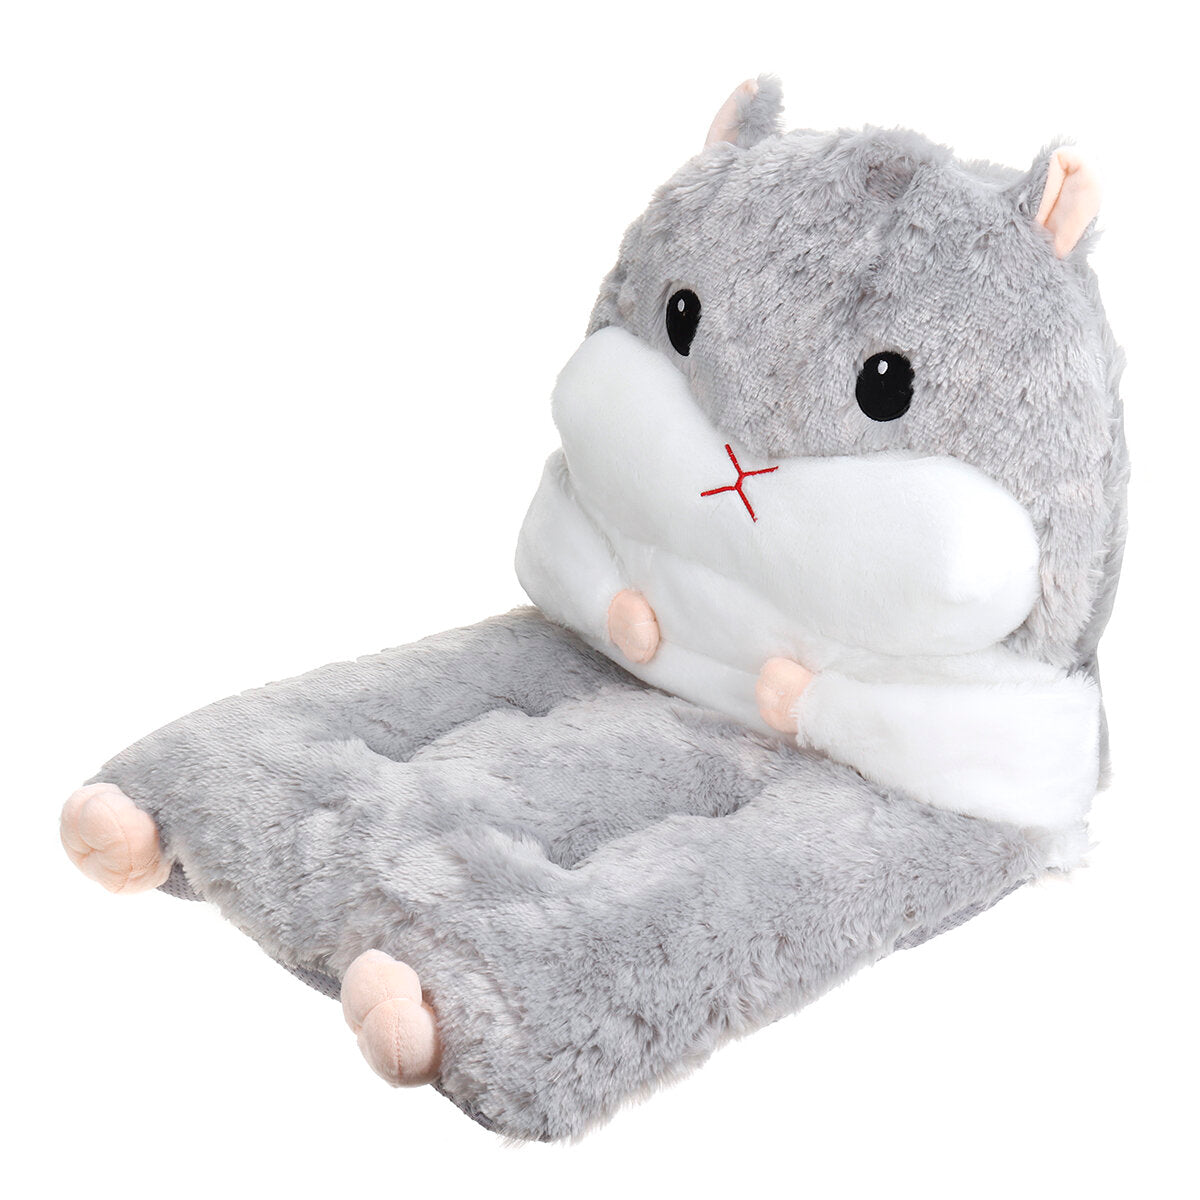 Detachable Seat Plush Cute Cartoon Hamster Chair Seat Sofa Cushion Pillow Back Pad Child Seat Cushion Home Supplies